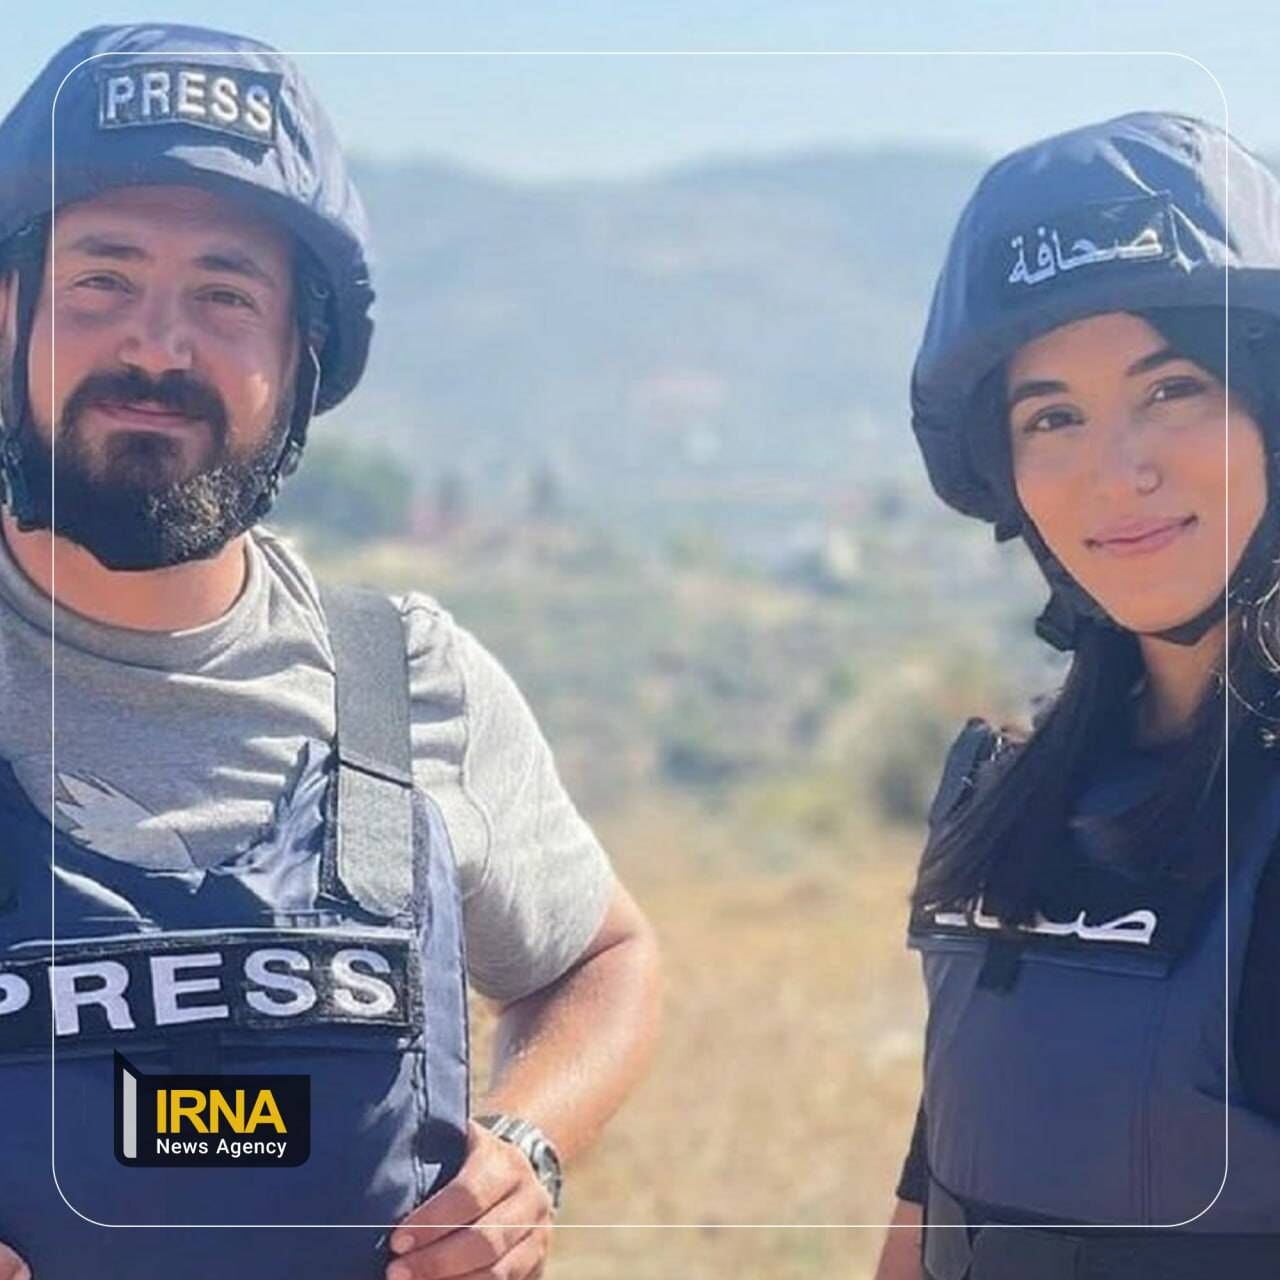 Zwei Journalisten bei israelischem Anschlag getötet